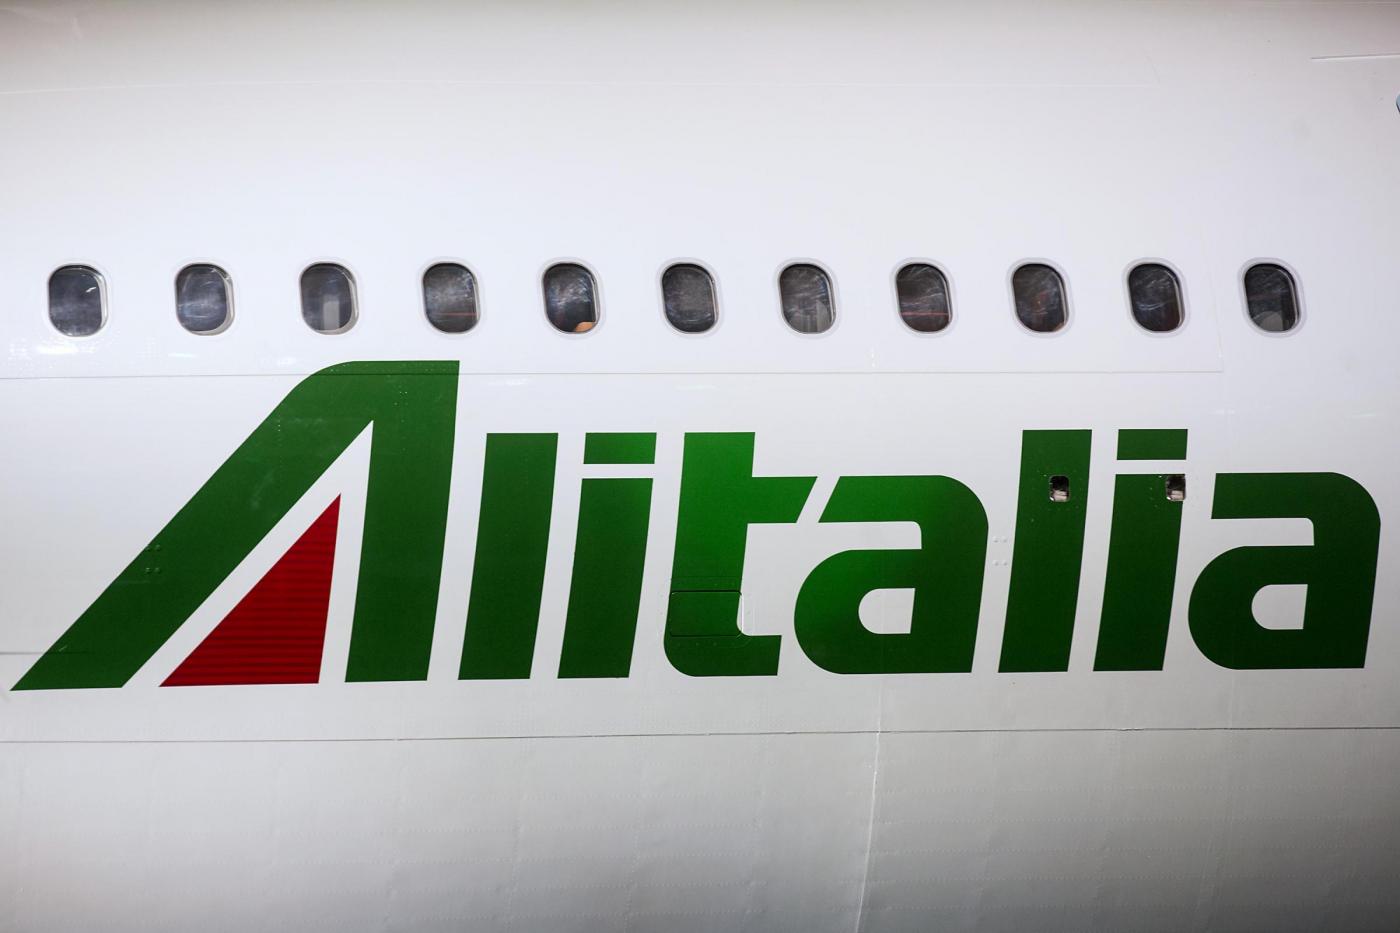 Sciopero Alitalia, oggi 5 aprile 2017 aerei fermi e voli cancellati: orari, info e come ottenere il rimborso